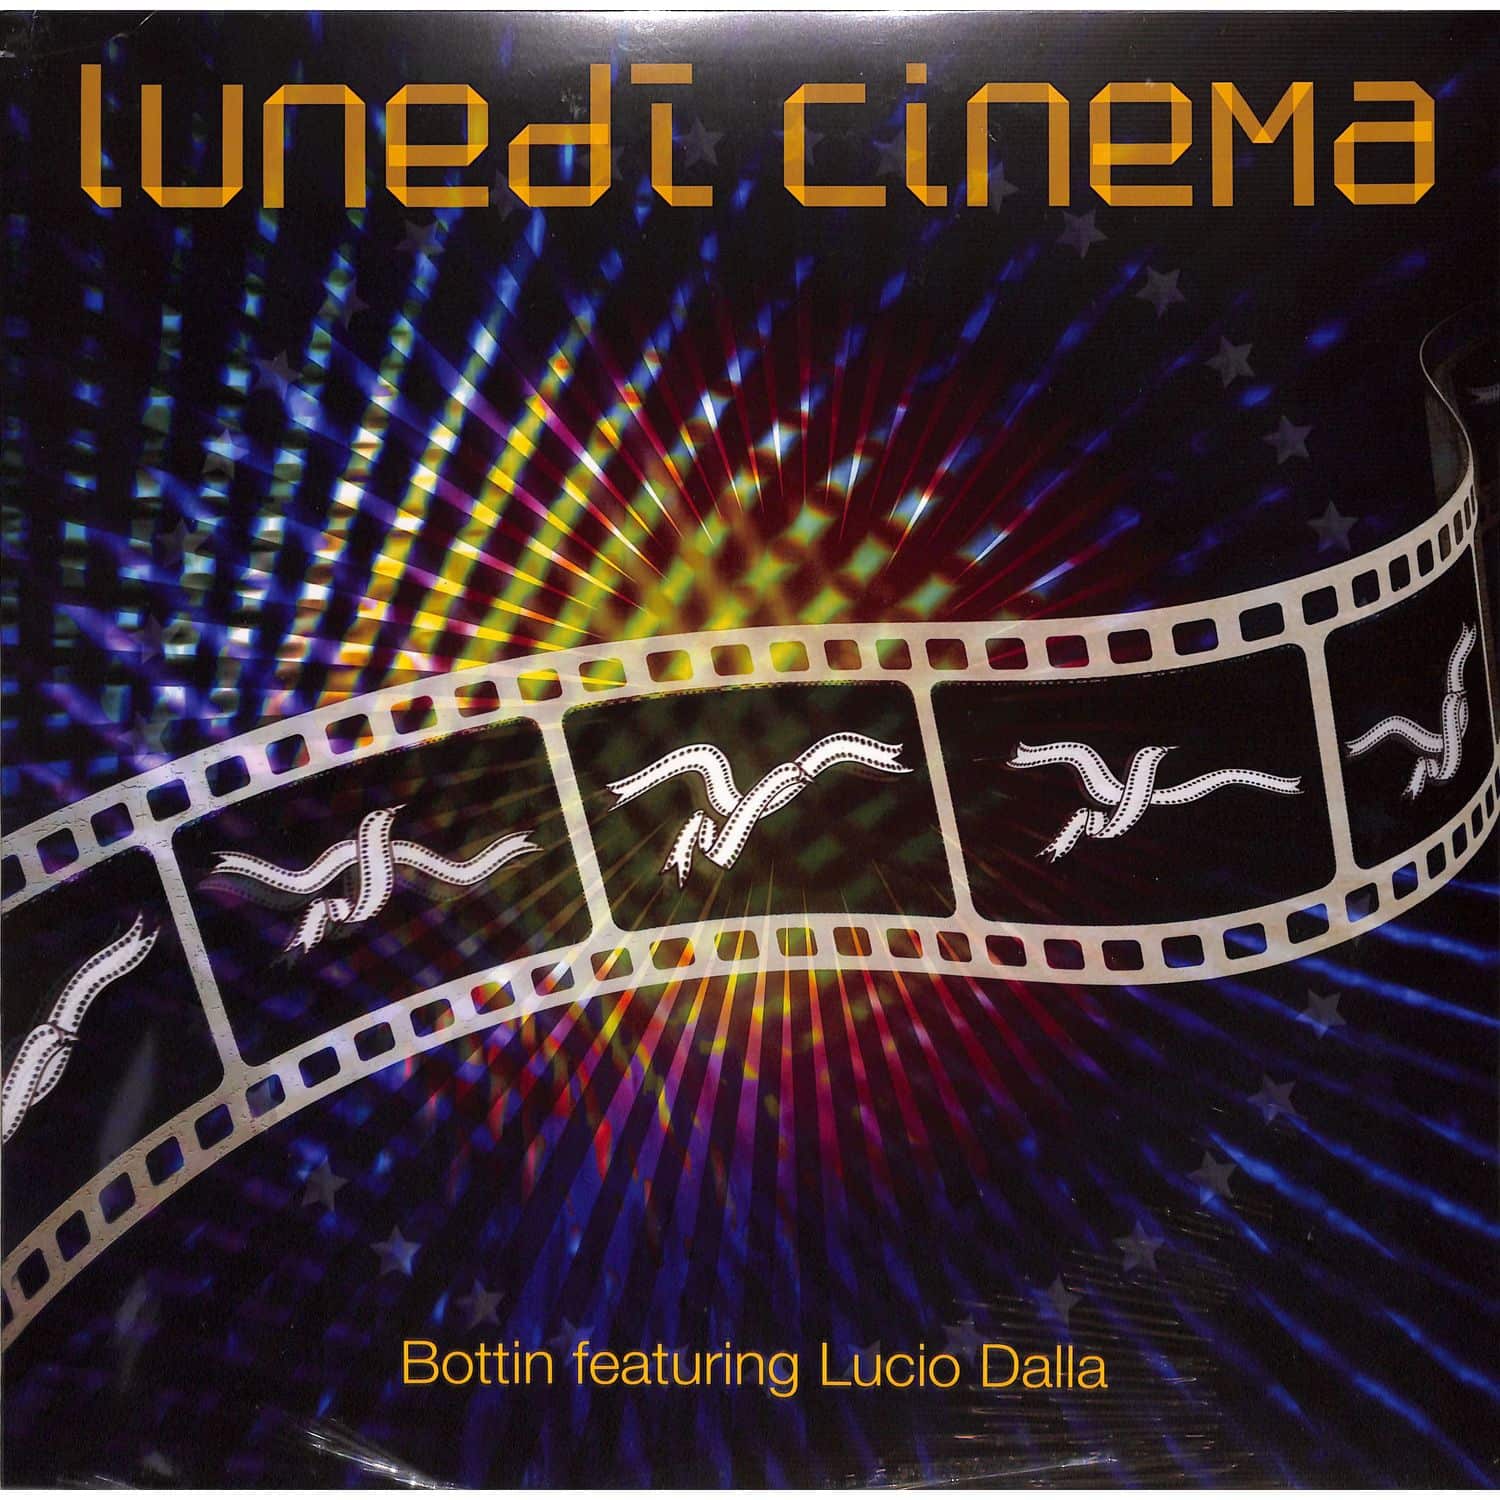 Bottin feat. Lucio Dalla - LUNEDI CINEMA